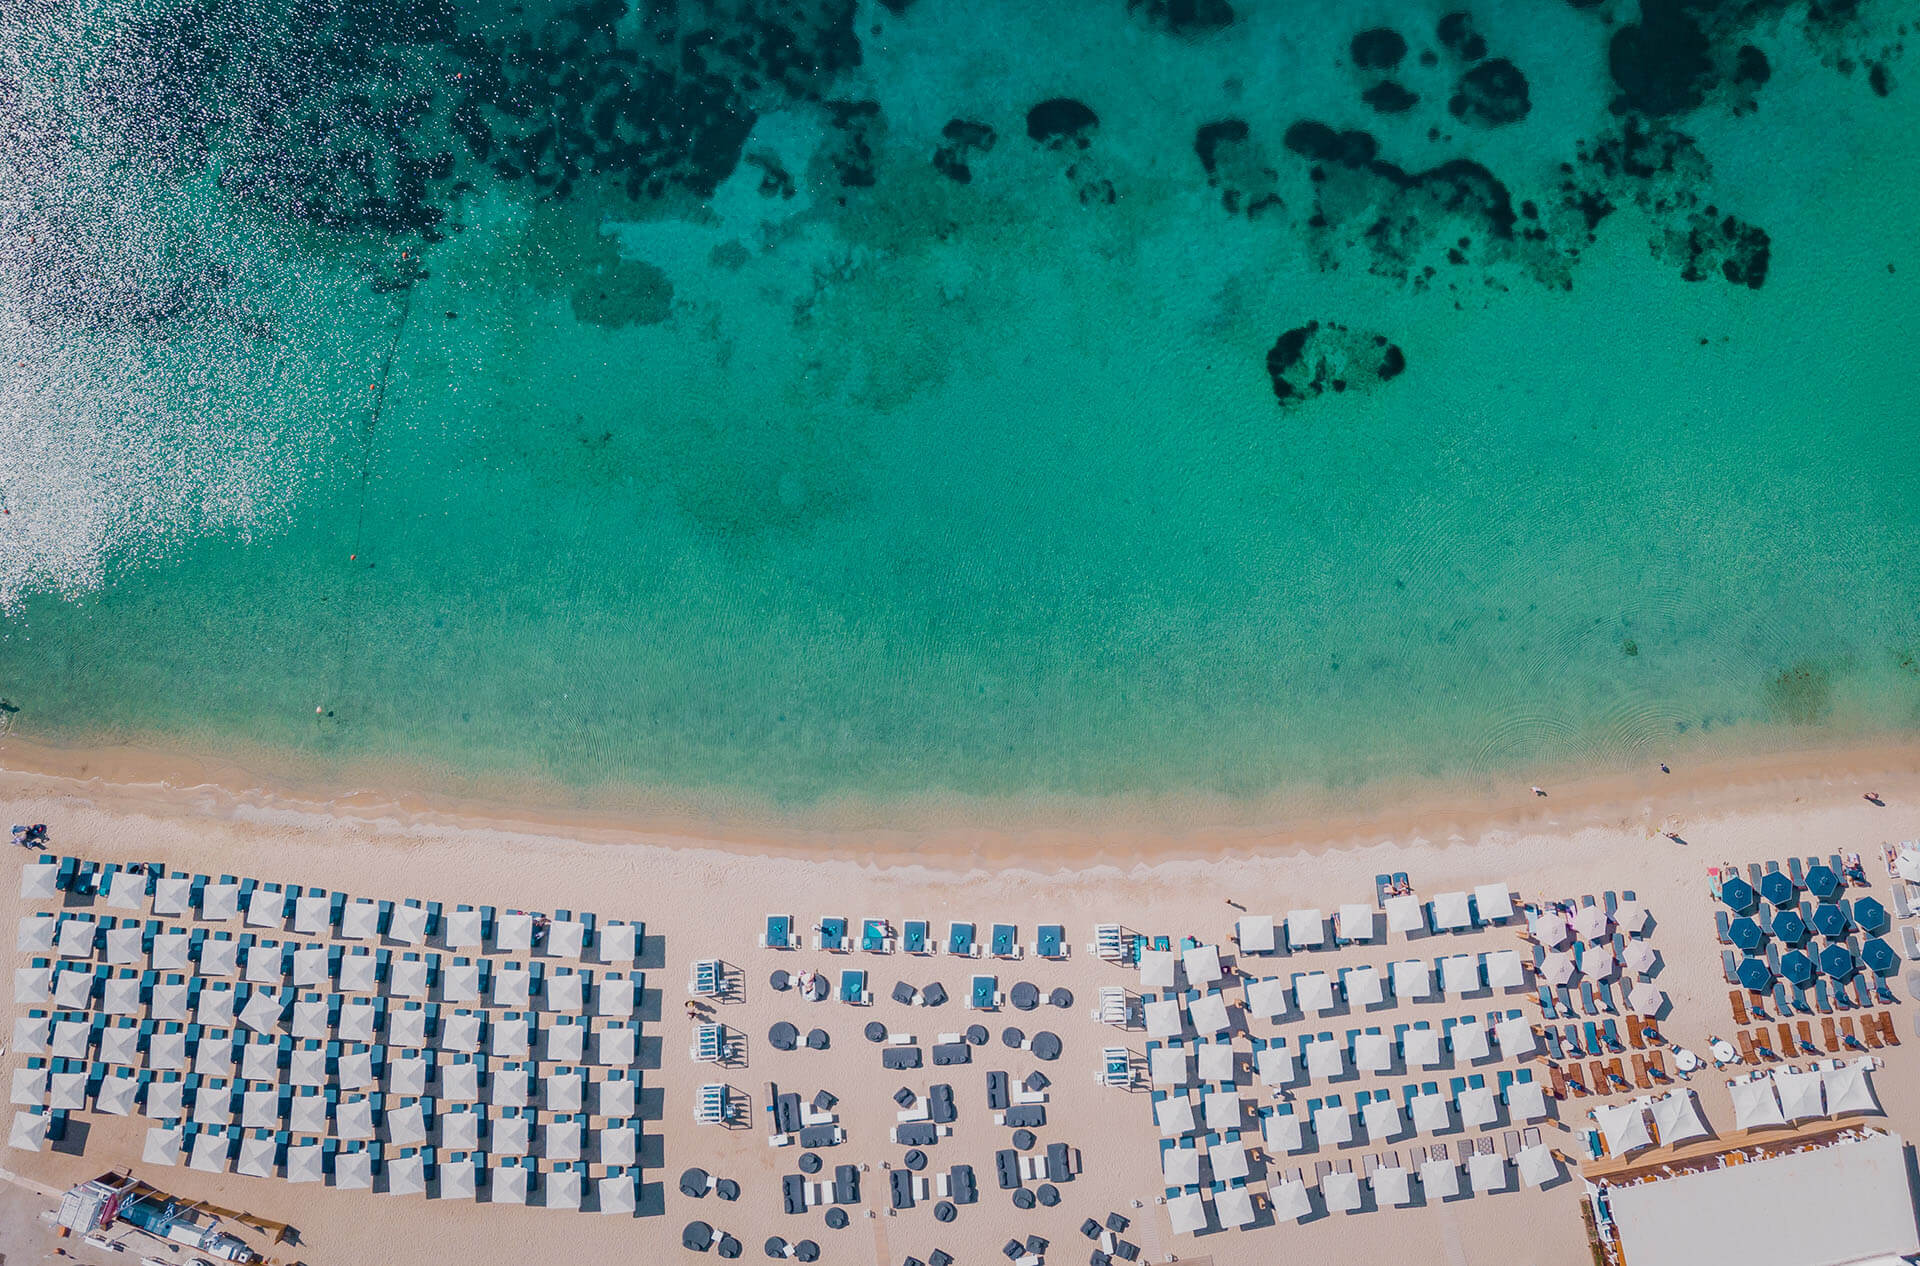 Ornos Plajı'in fotoğrafı parlak ince kum yüzey ile